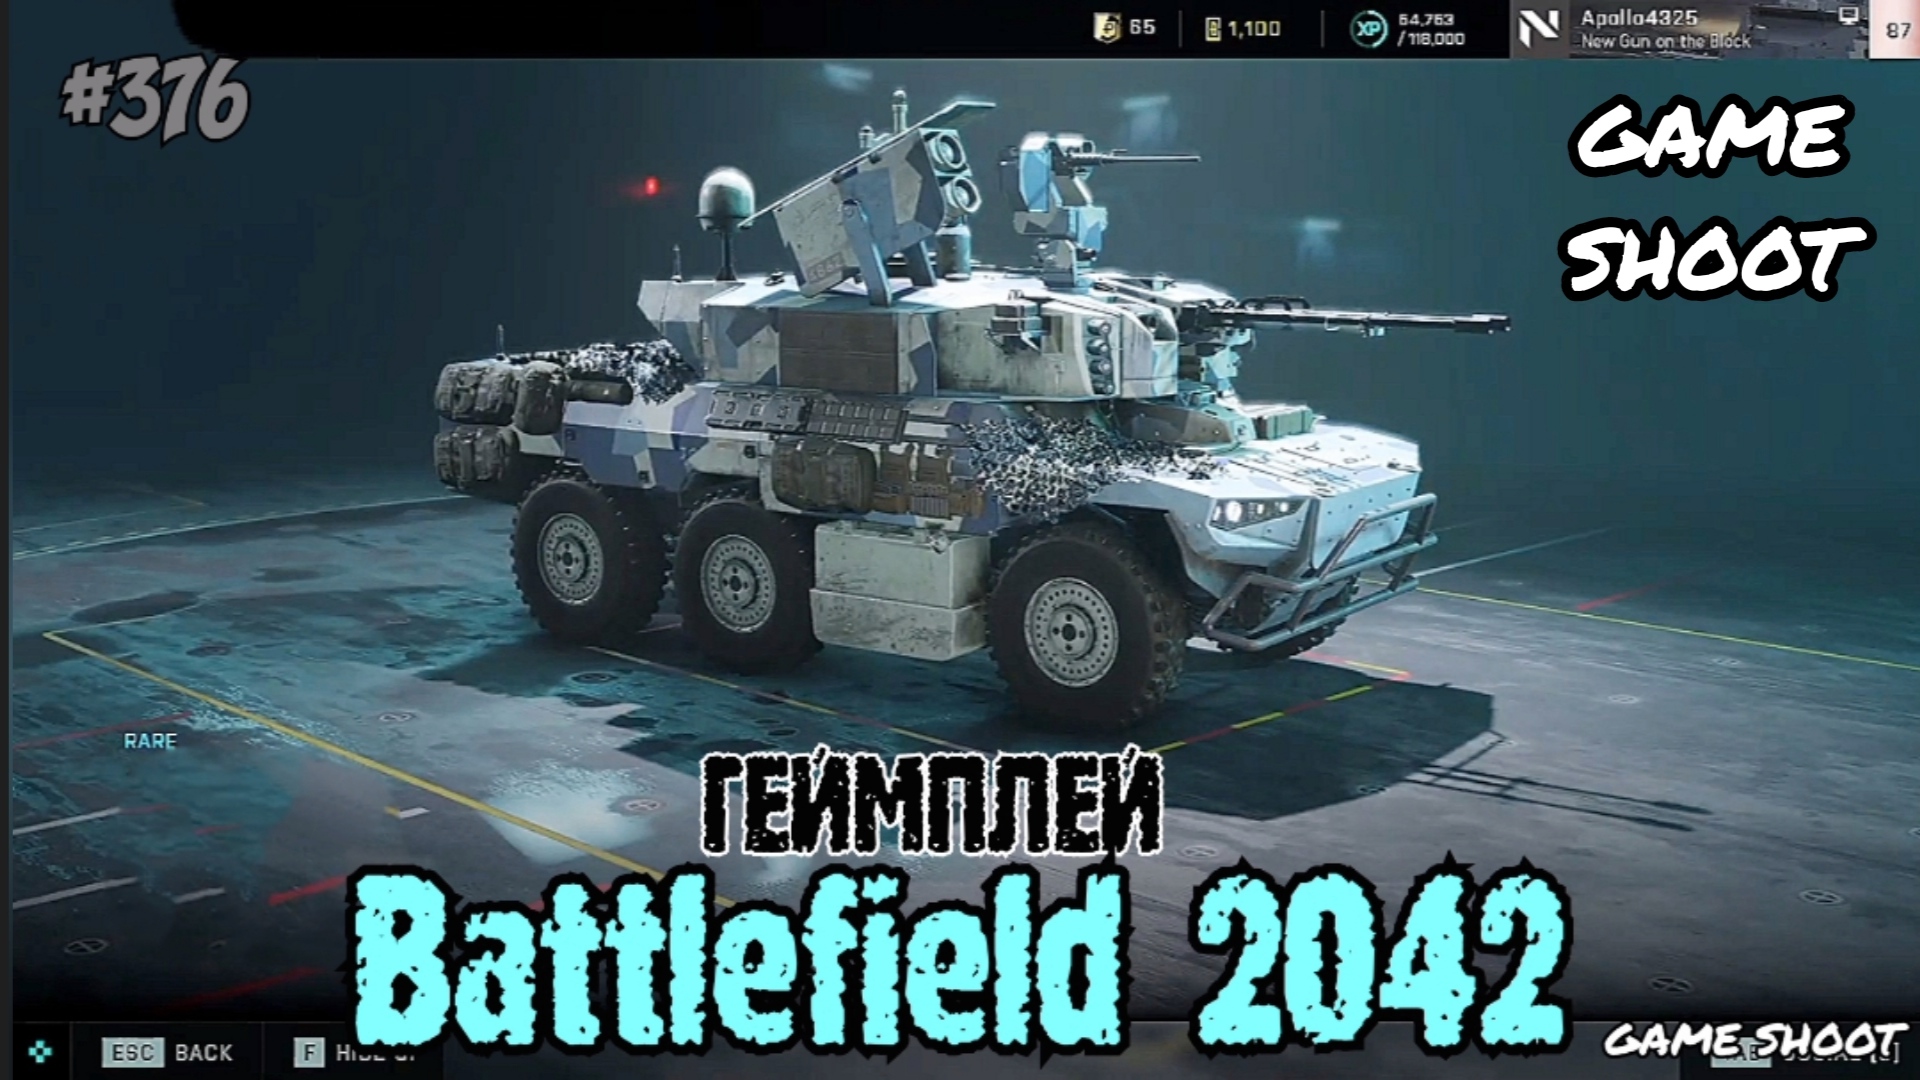 Battlefield 2042 •геймплей• #376 Game Shoot